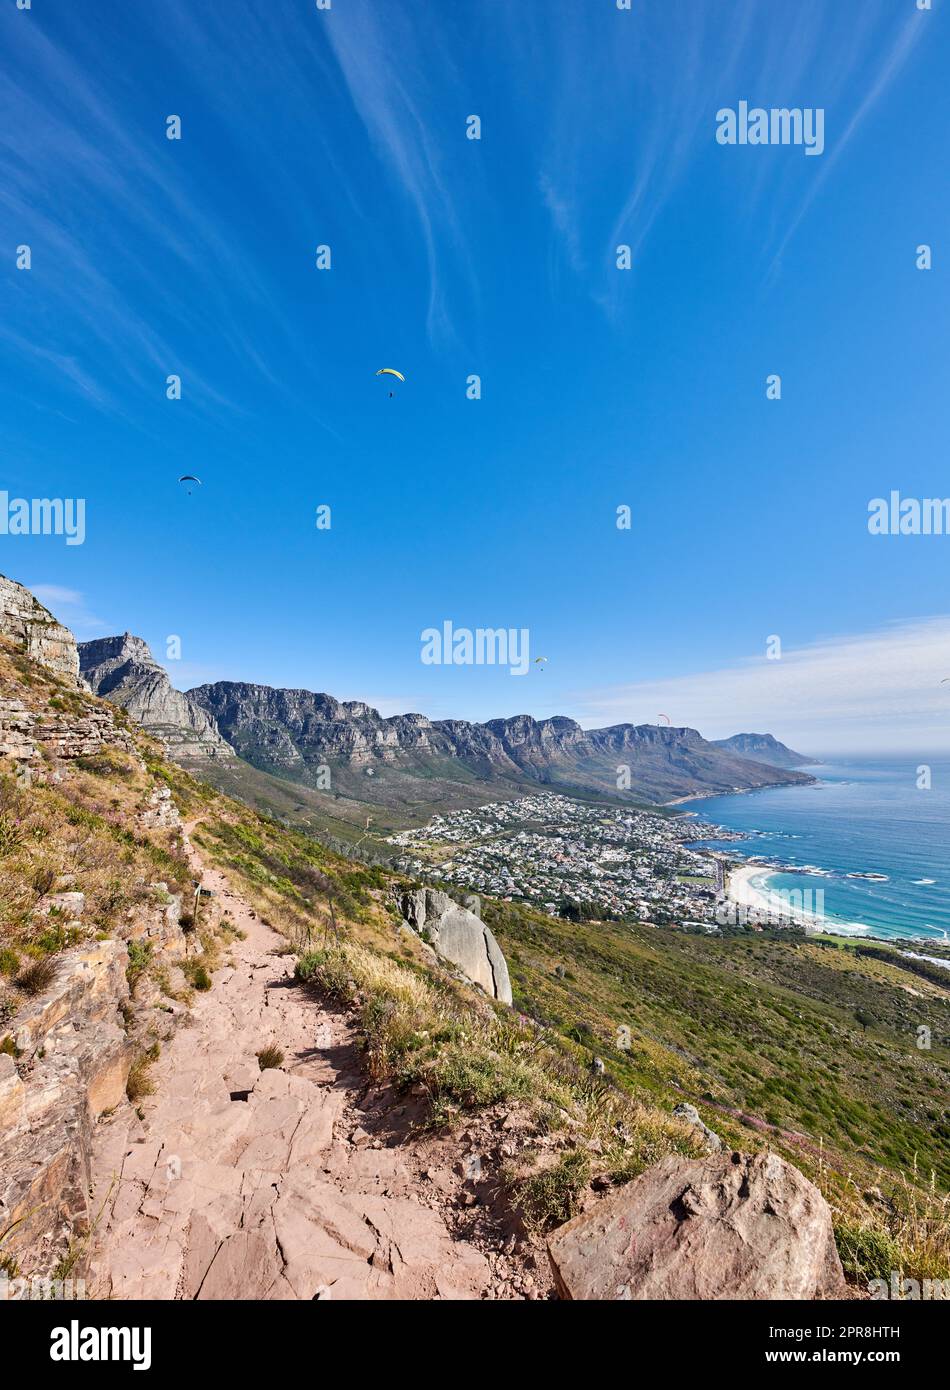 Berühmter Bergwanderweg mit Kopierraum, rauen Felsen oder Steinen, der zu einem malerischen Blick auf die zwölf Apostel in Kapstadt führt. Landschaft mit Meer, Meer und Küstenstadt mit blauem Himmel aus dem Naturschutzgebiet Stockfoto